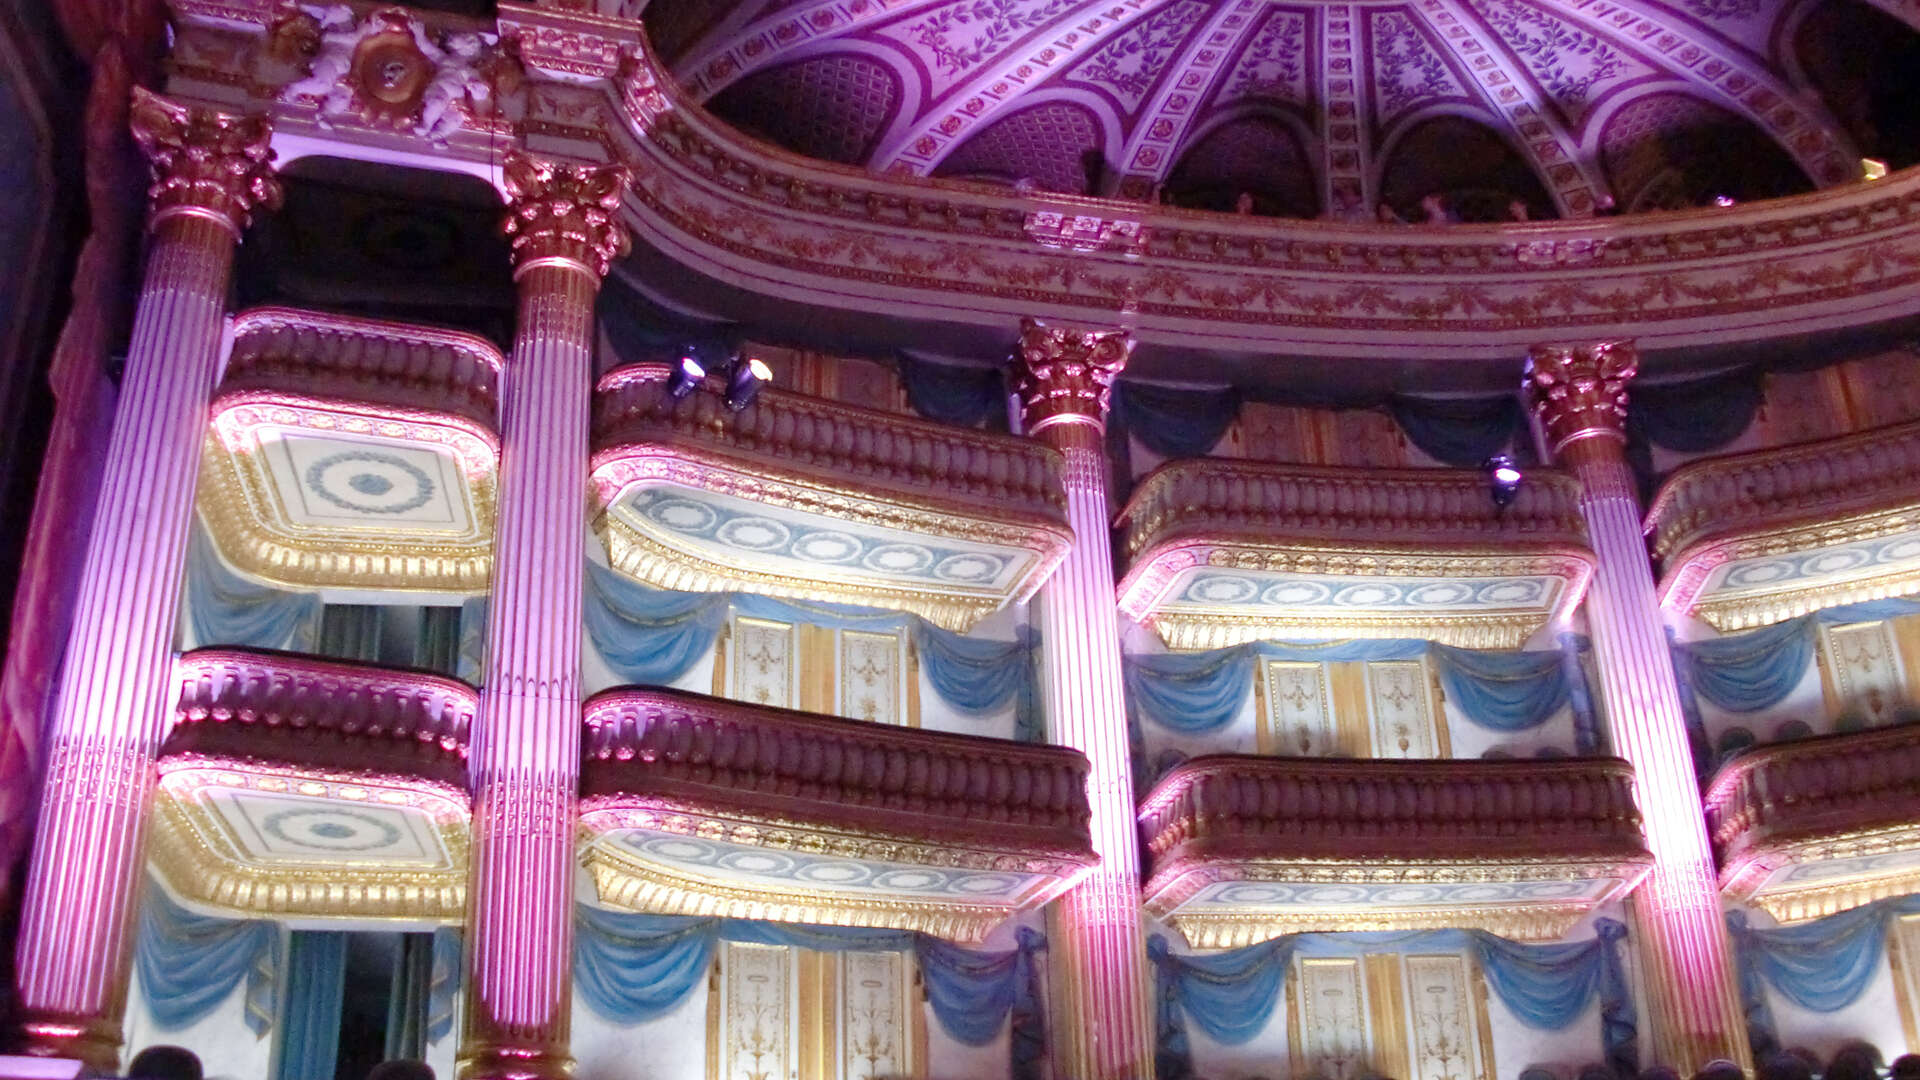 Grand Théâtre